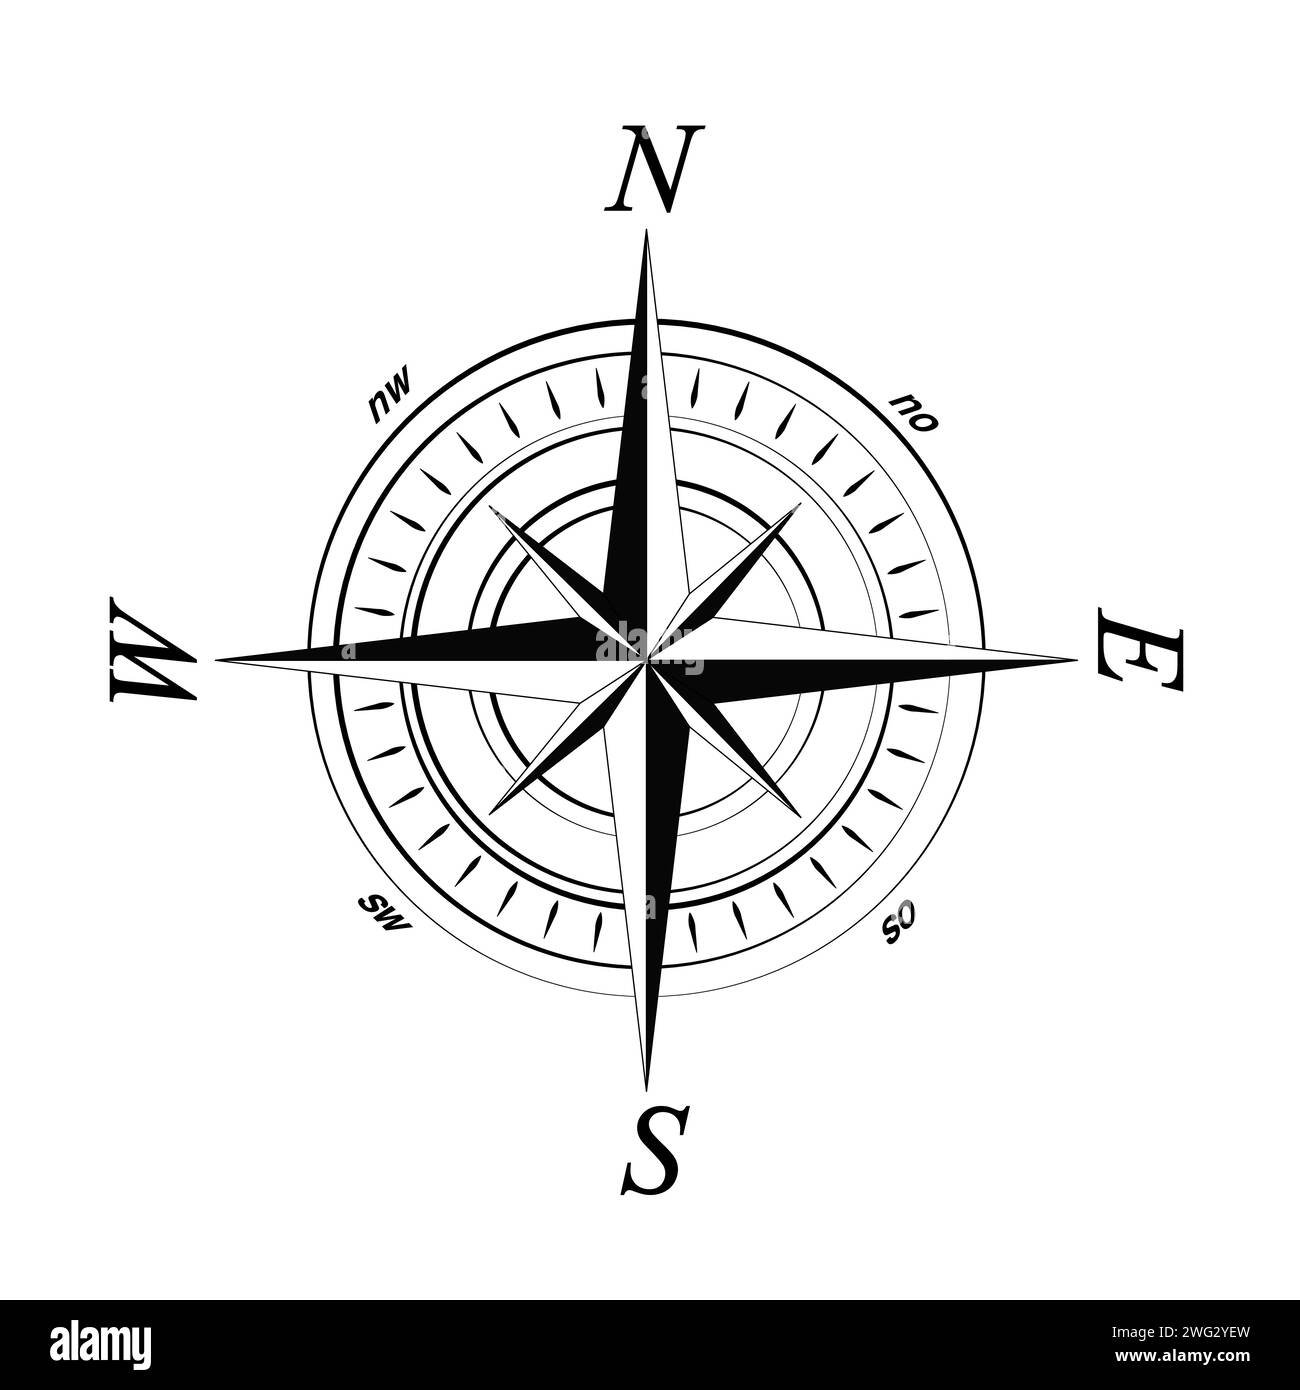 Kompass Rose Vector mit acht Richtungen und deutscher Osten Bezeichnung. Isolierter Hintergrund. Illustrazione Vettoriale